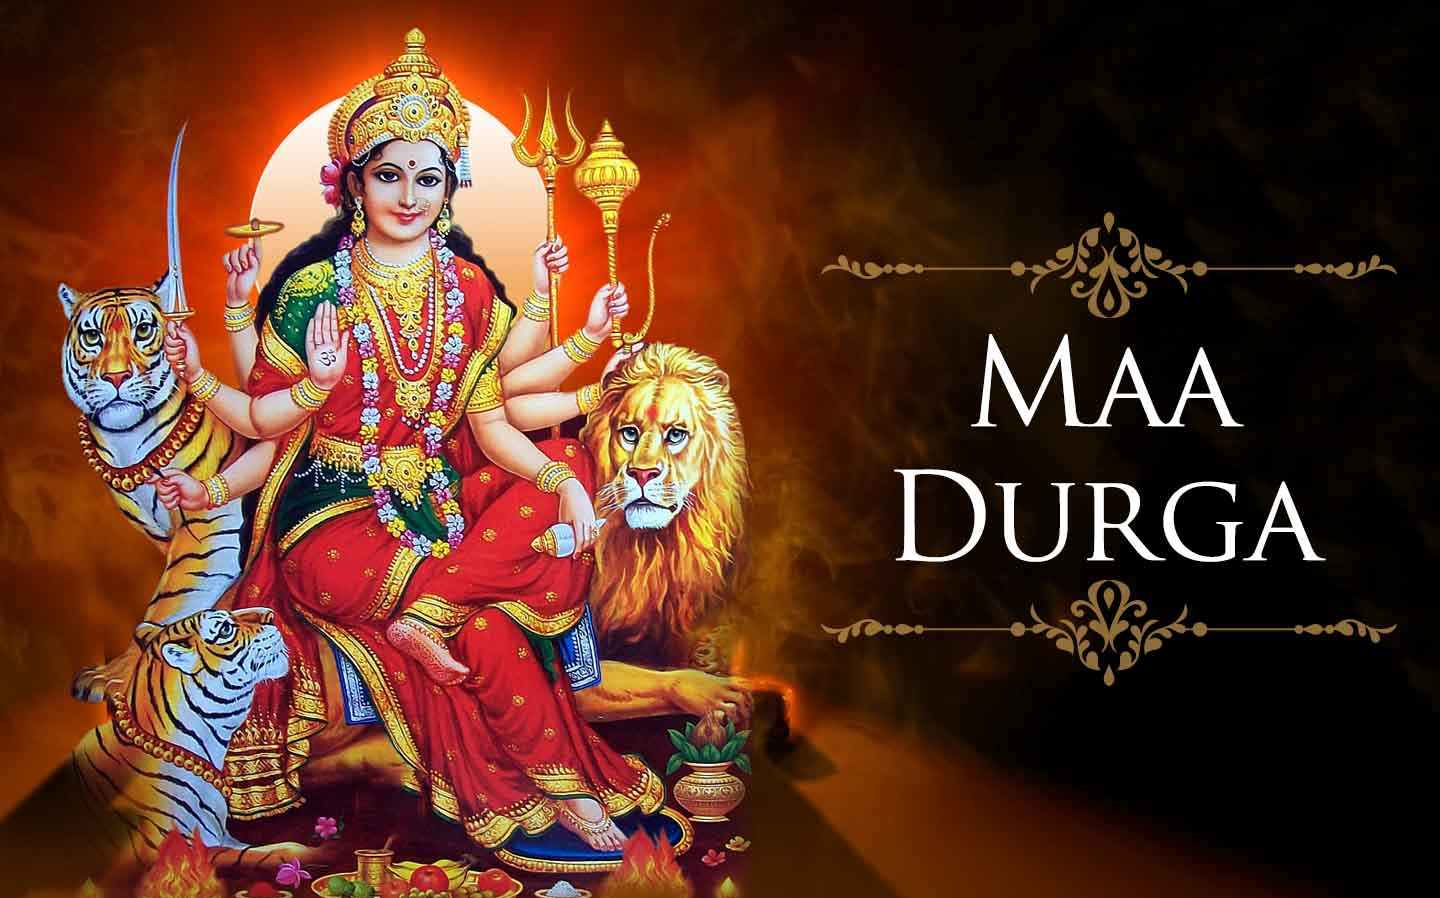 जानिये दुर्गा देवी का रहस्य | Story of Maa Durga 